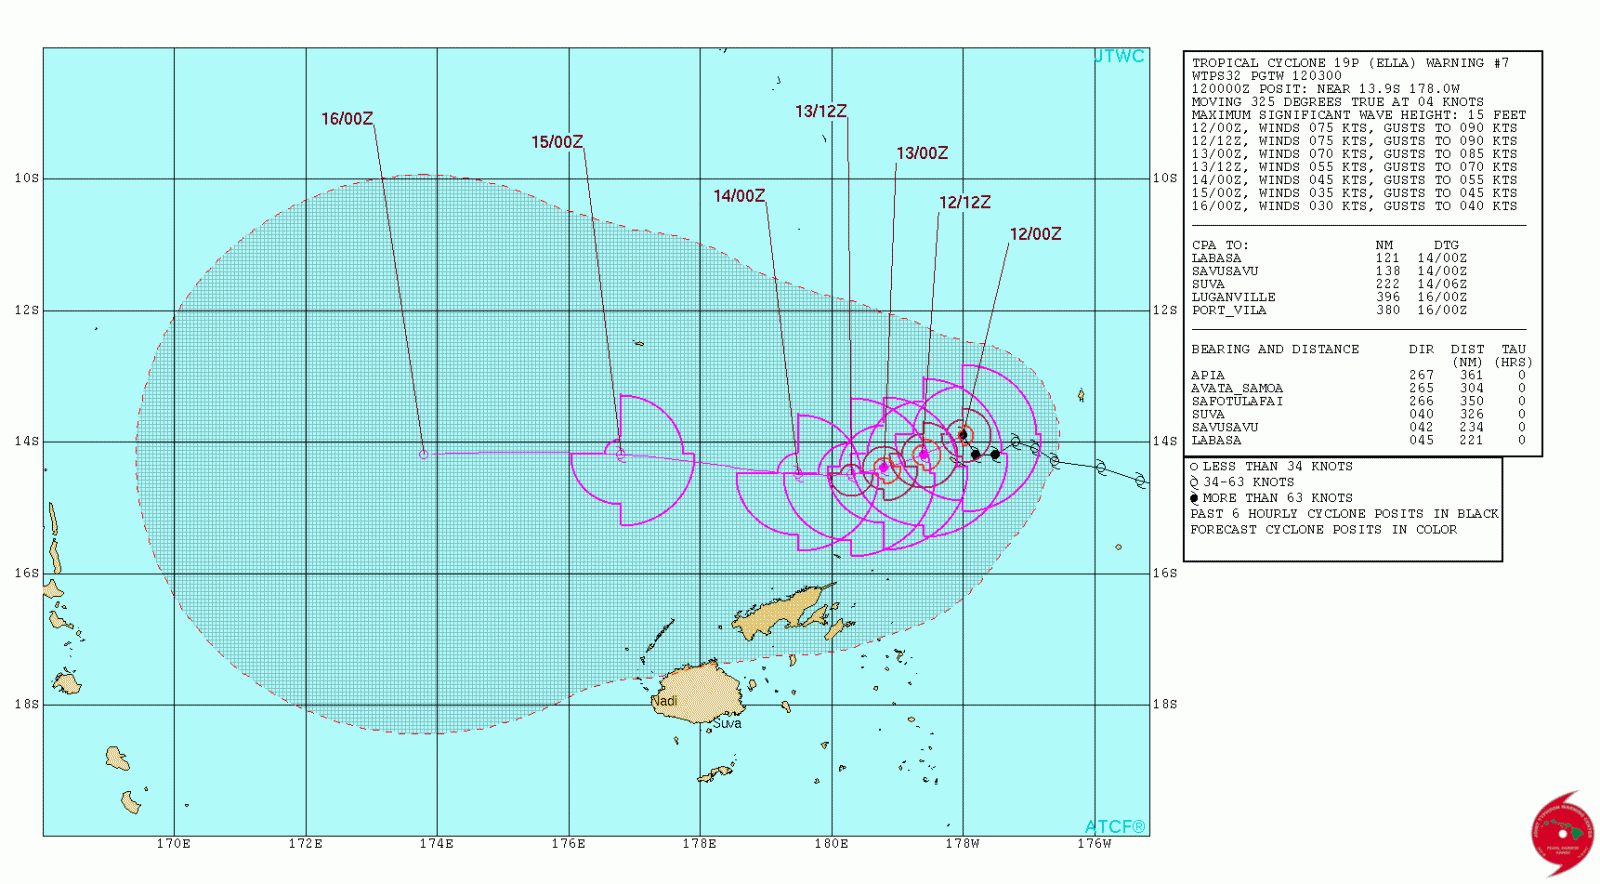 Tropical Cyclone Ella forecast track by JTWC on May 12, 2017